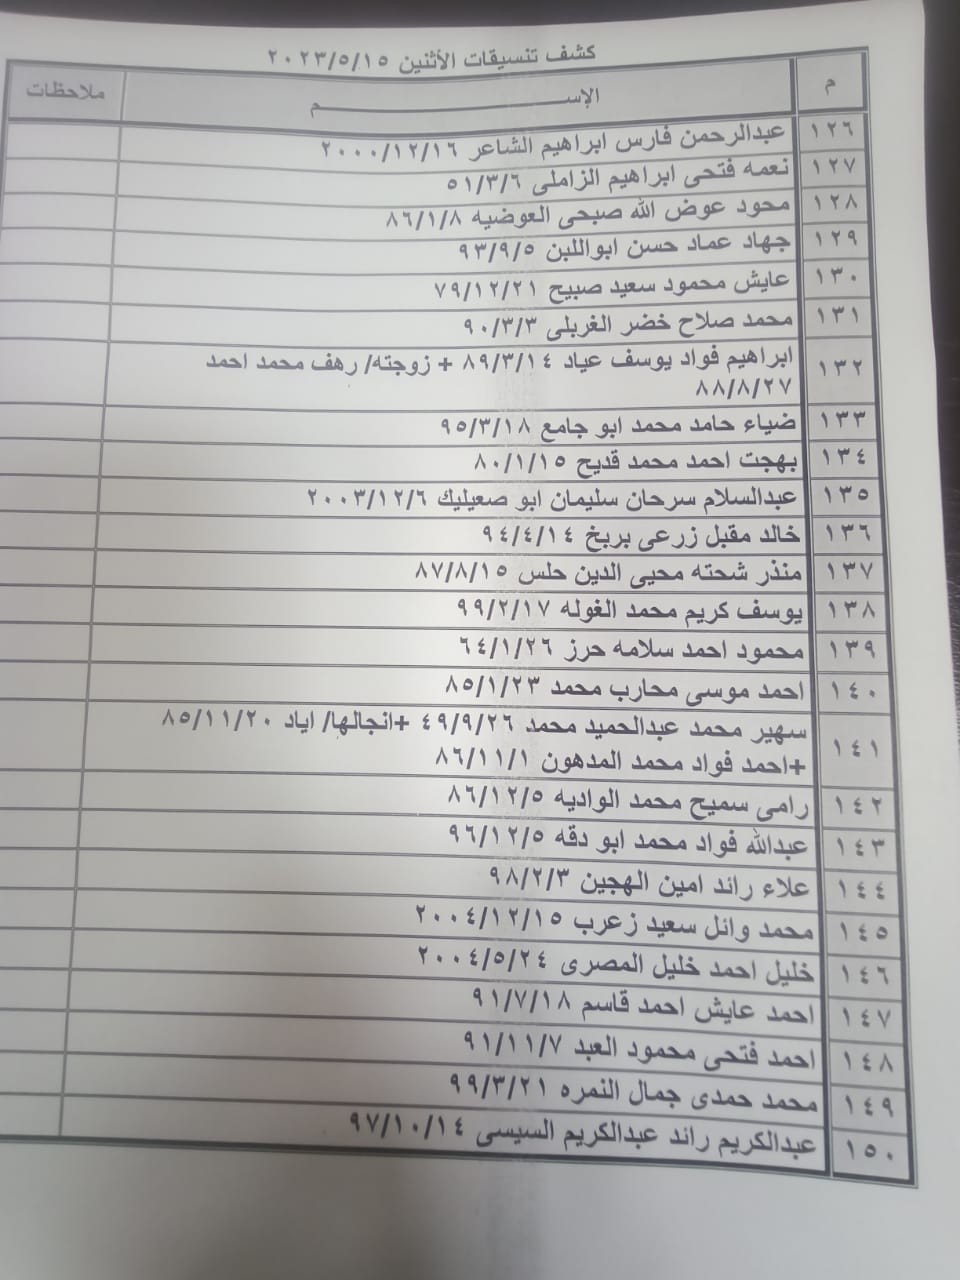 بالأسماء: كشف "التنسيقات المصرية" للسفر عبر معبر رفح الإثنين 15 مايو 2023